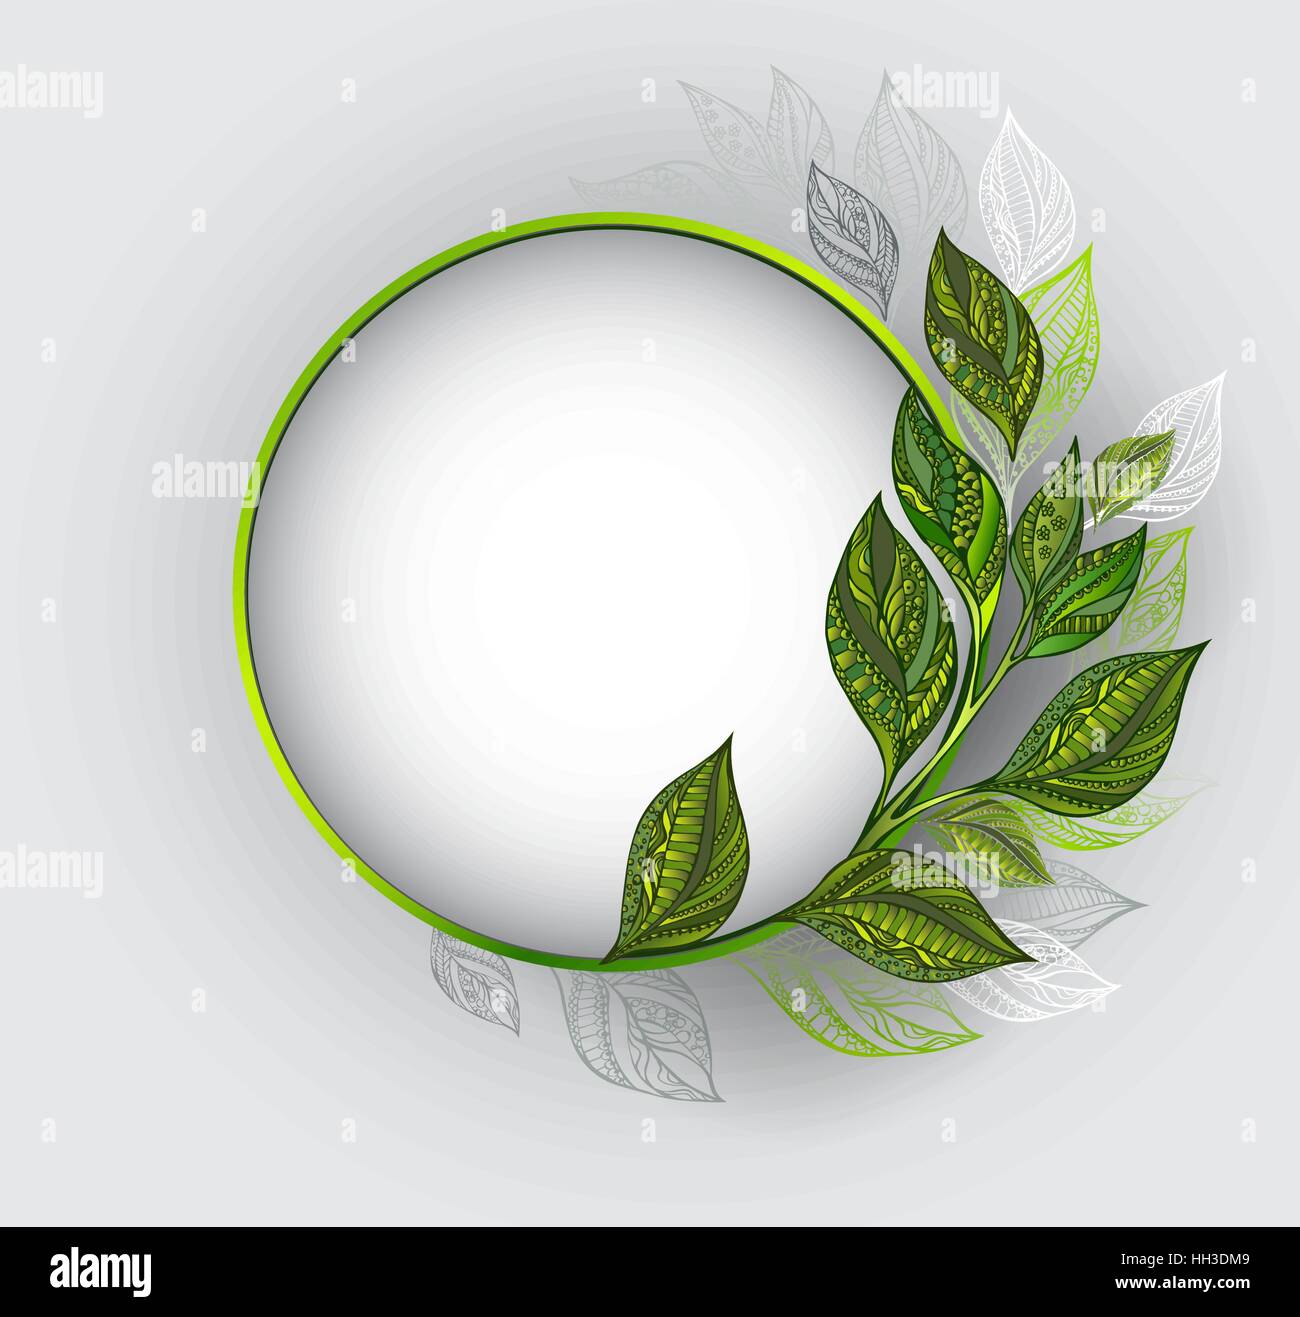 Runde Banner mit einem grünen Rahmen, dekoriert mit gemusterten, grün und grau Blätter Tee auf einem grauen Hintergrund. Tee-Design. Stock Vektor